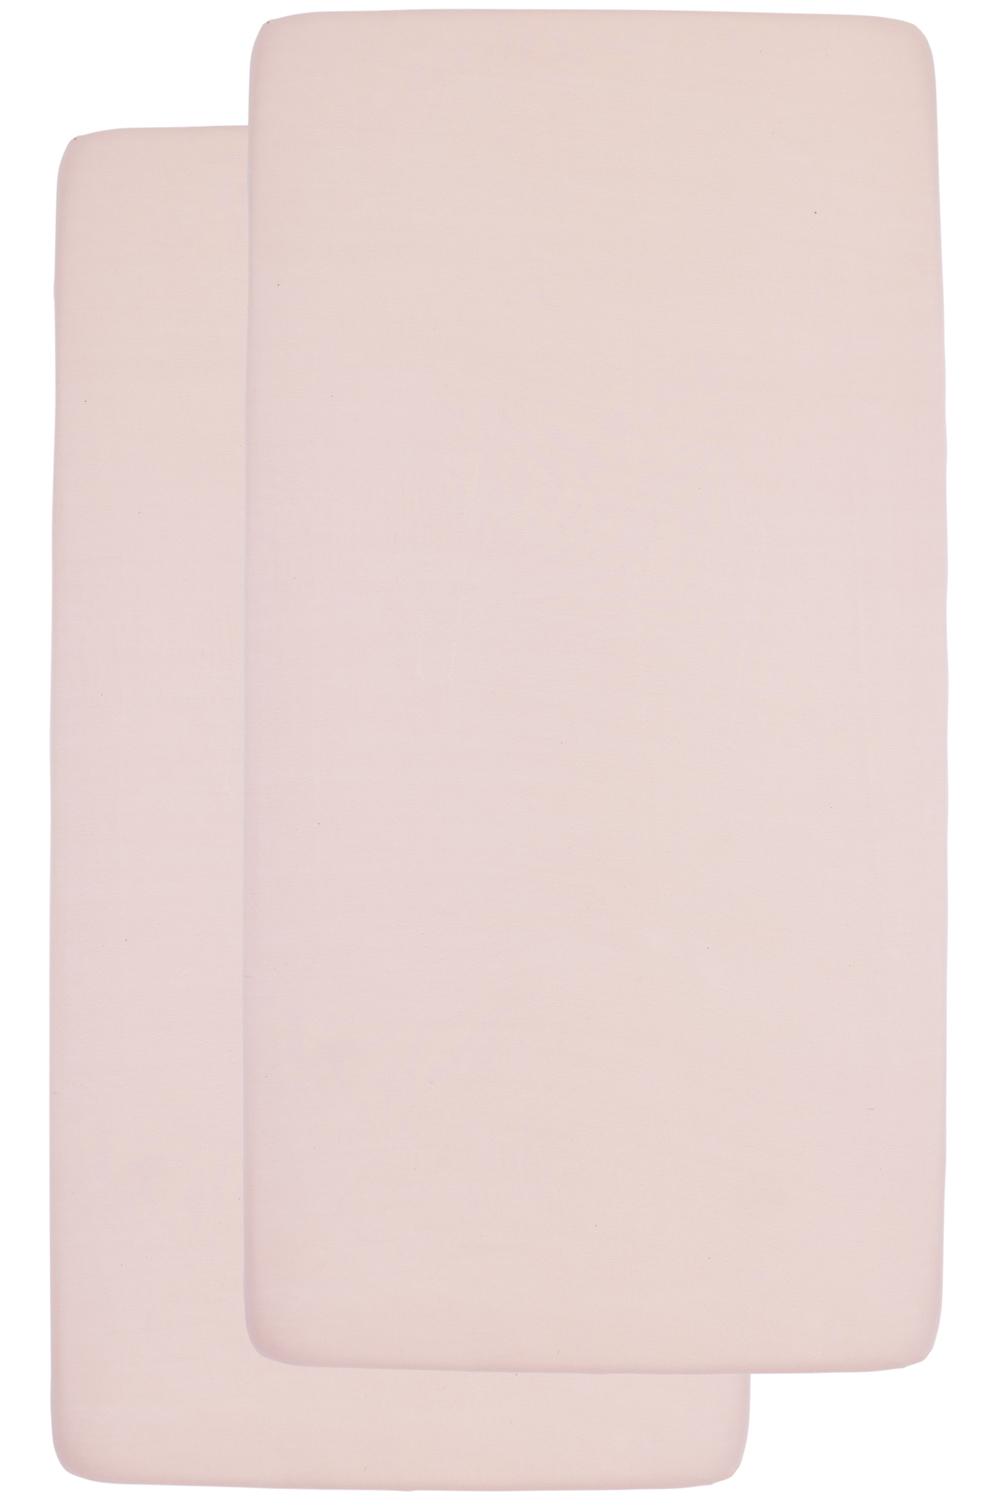 Hoeslaken juniorbed 2-pack Uni - soft pink - 70x140/150cm